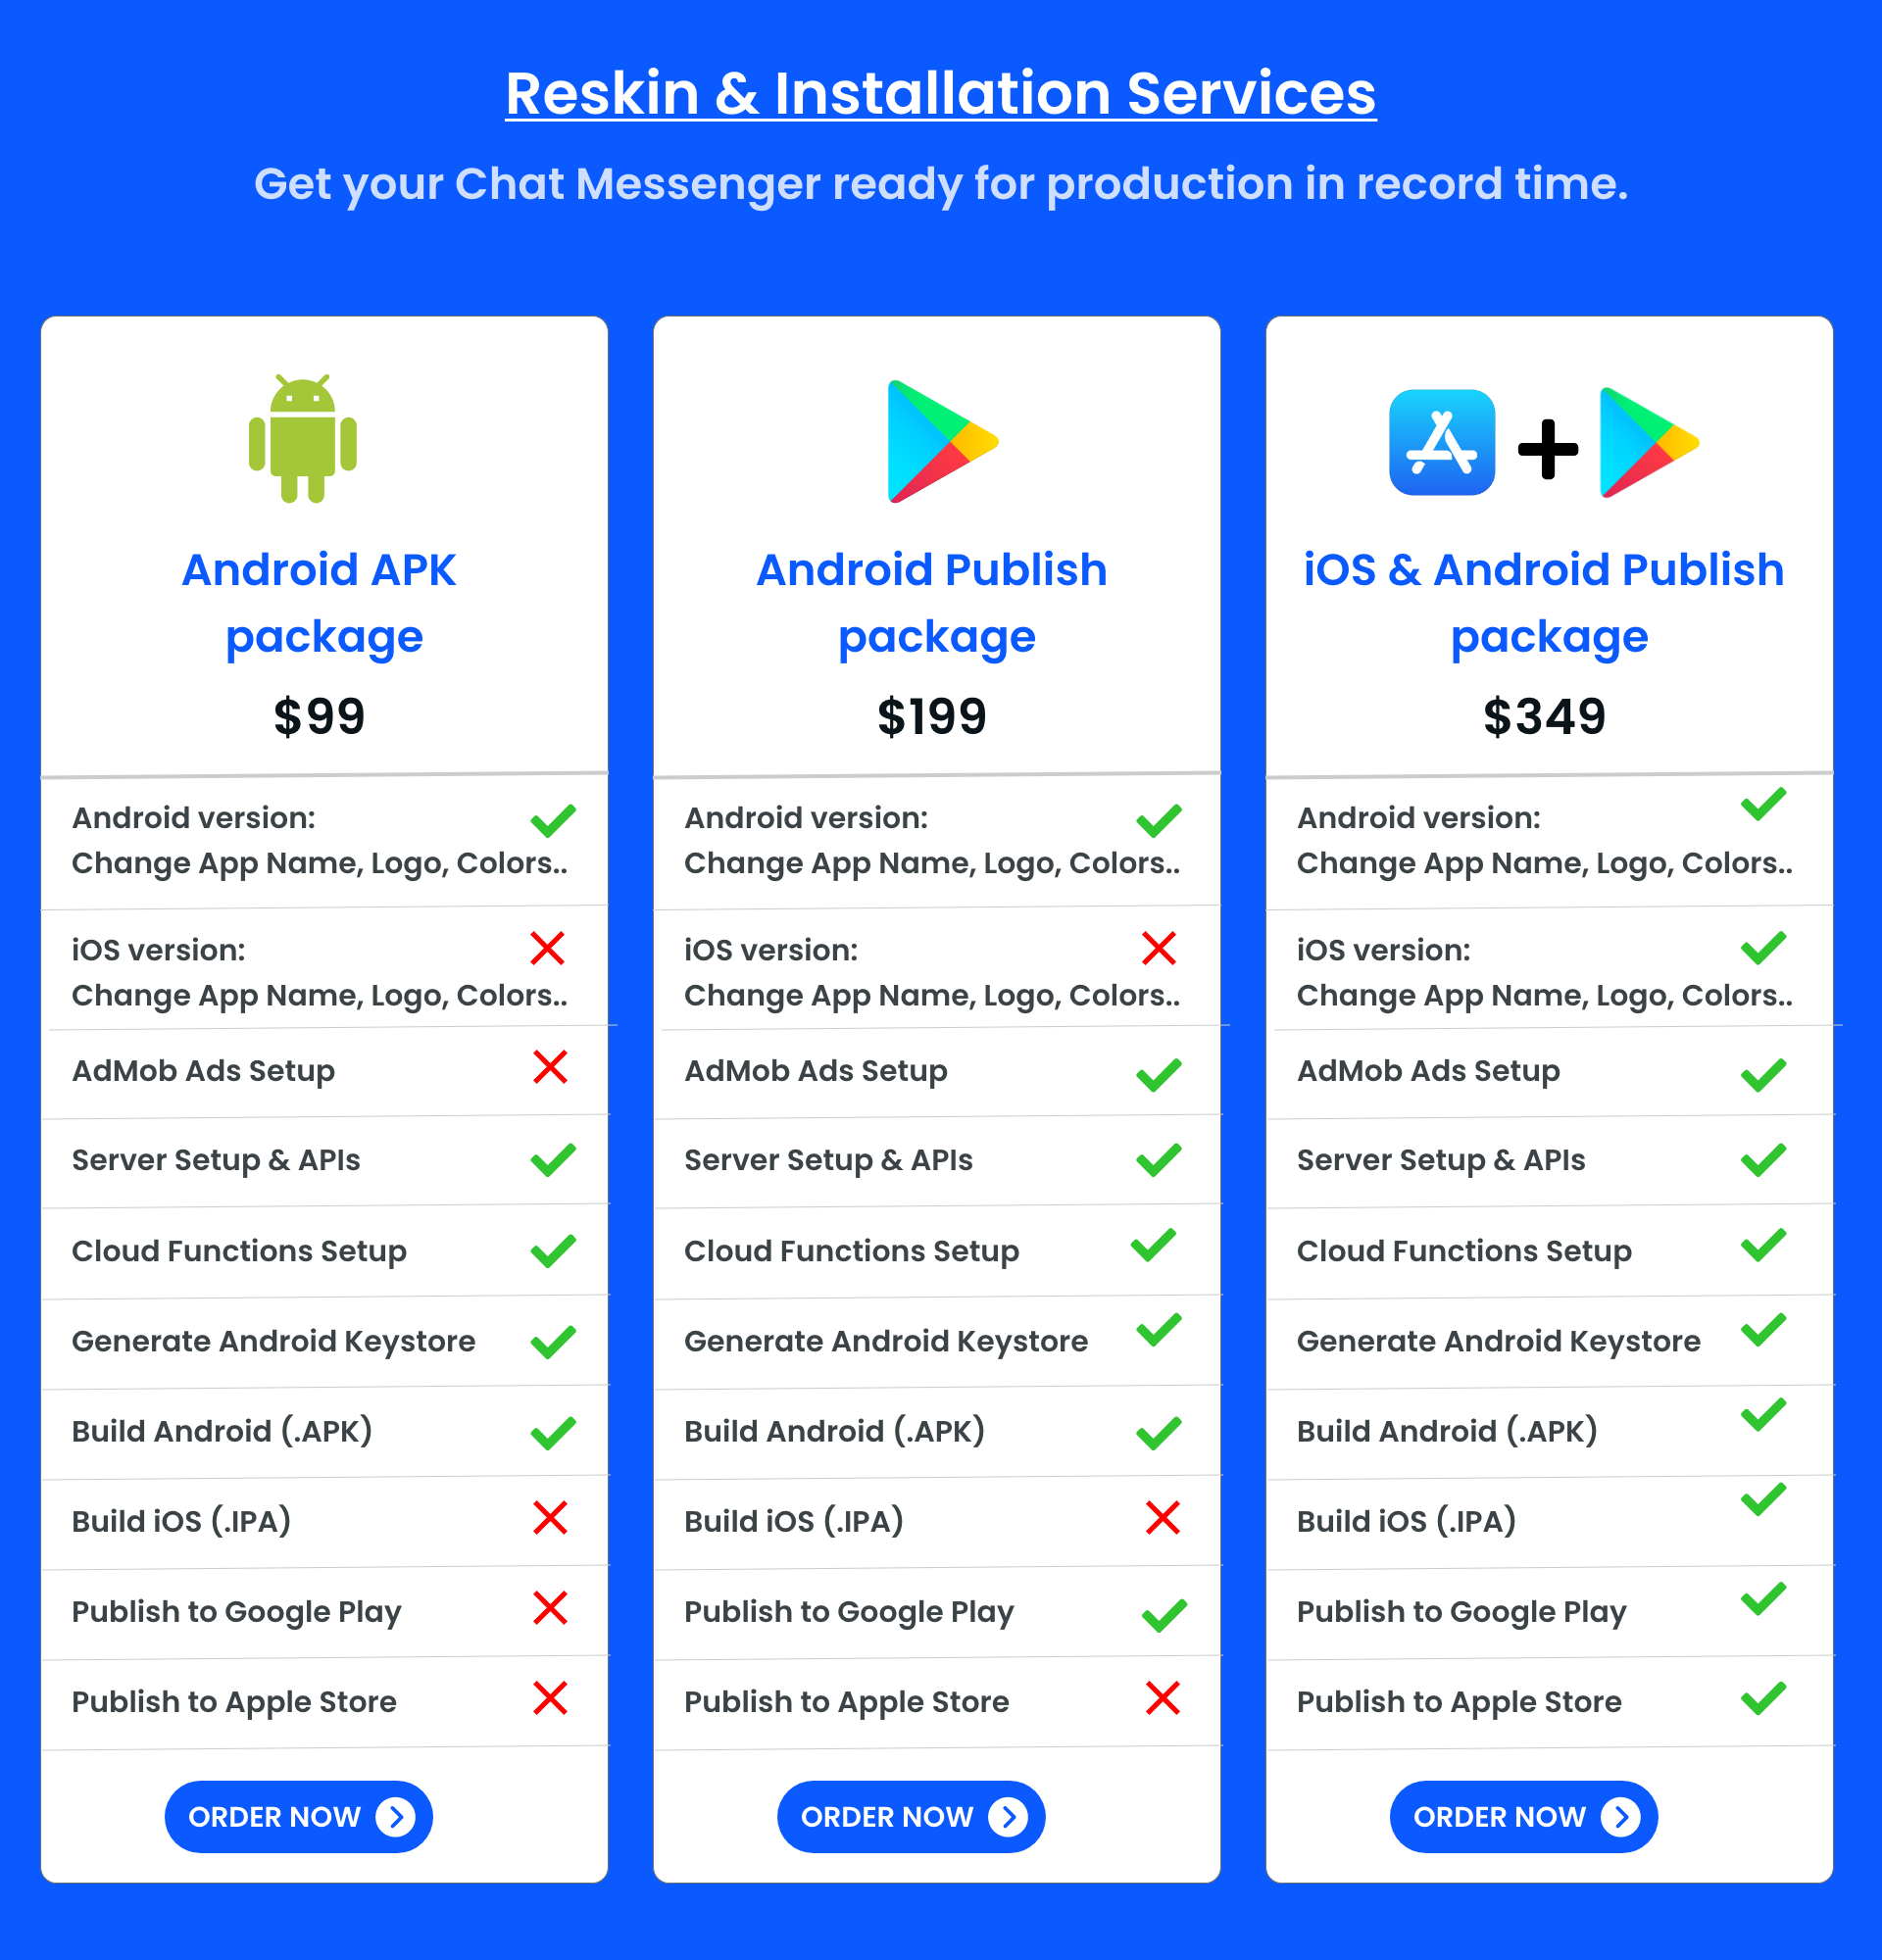 Reskin & Installation Services